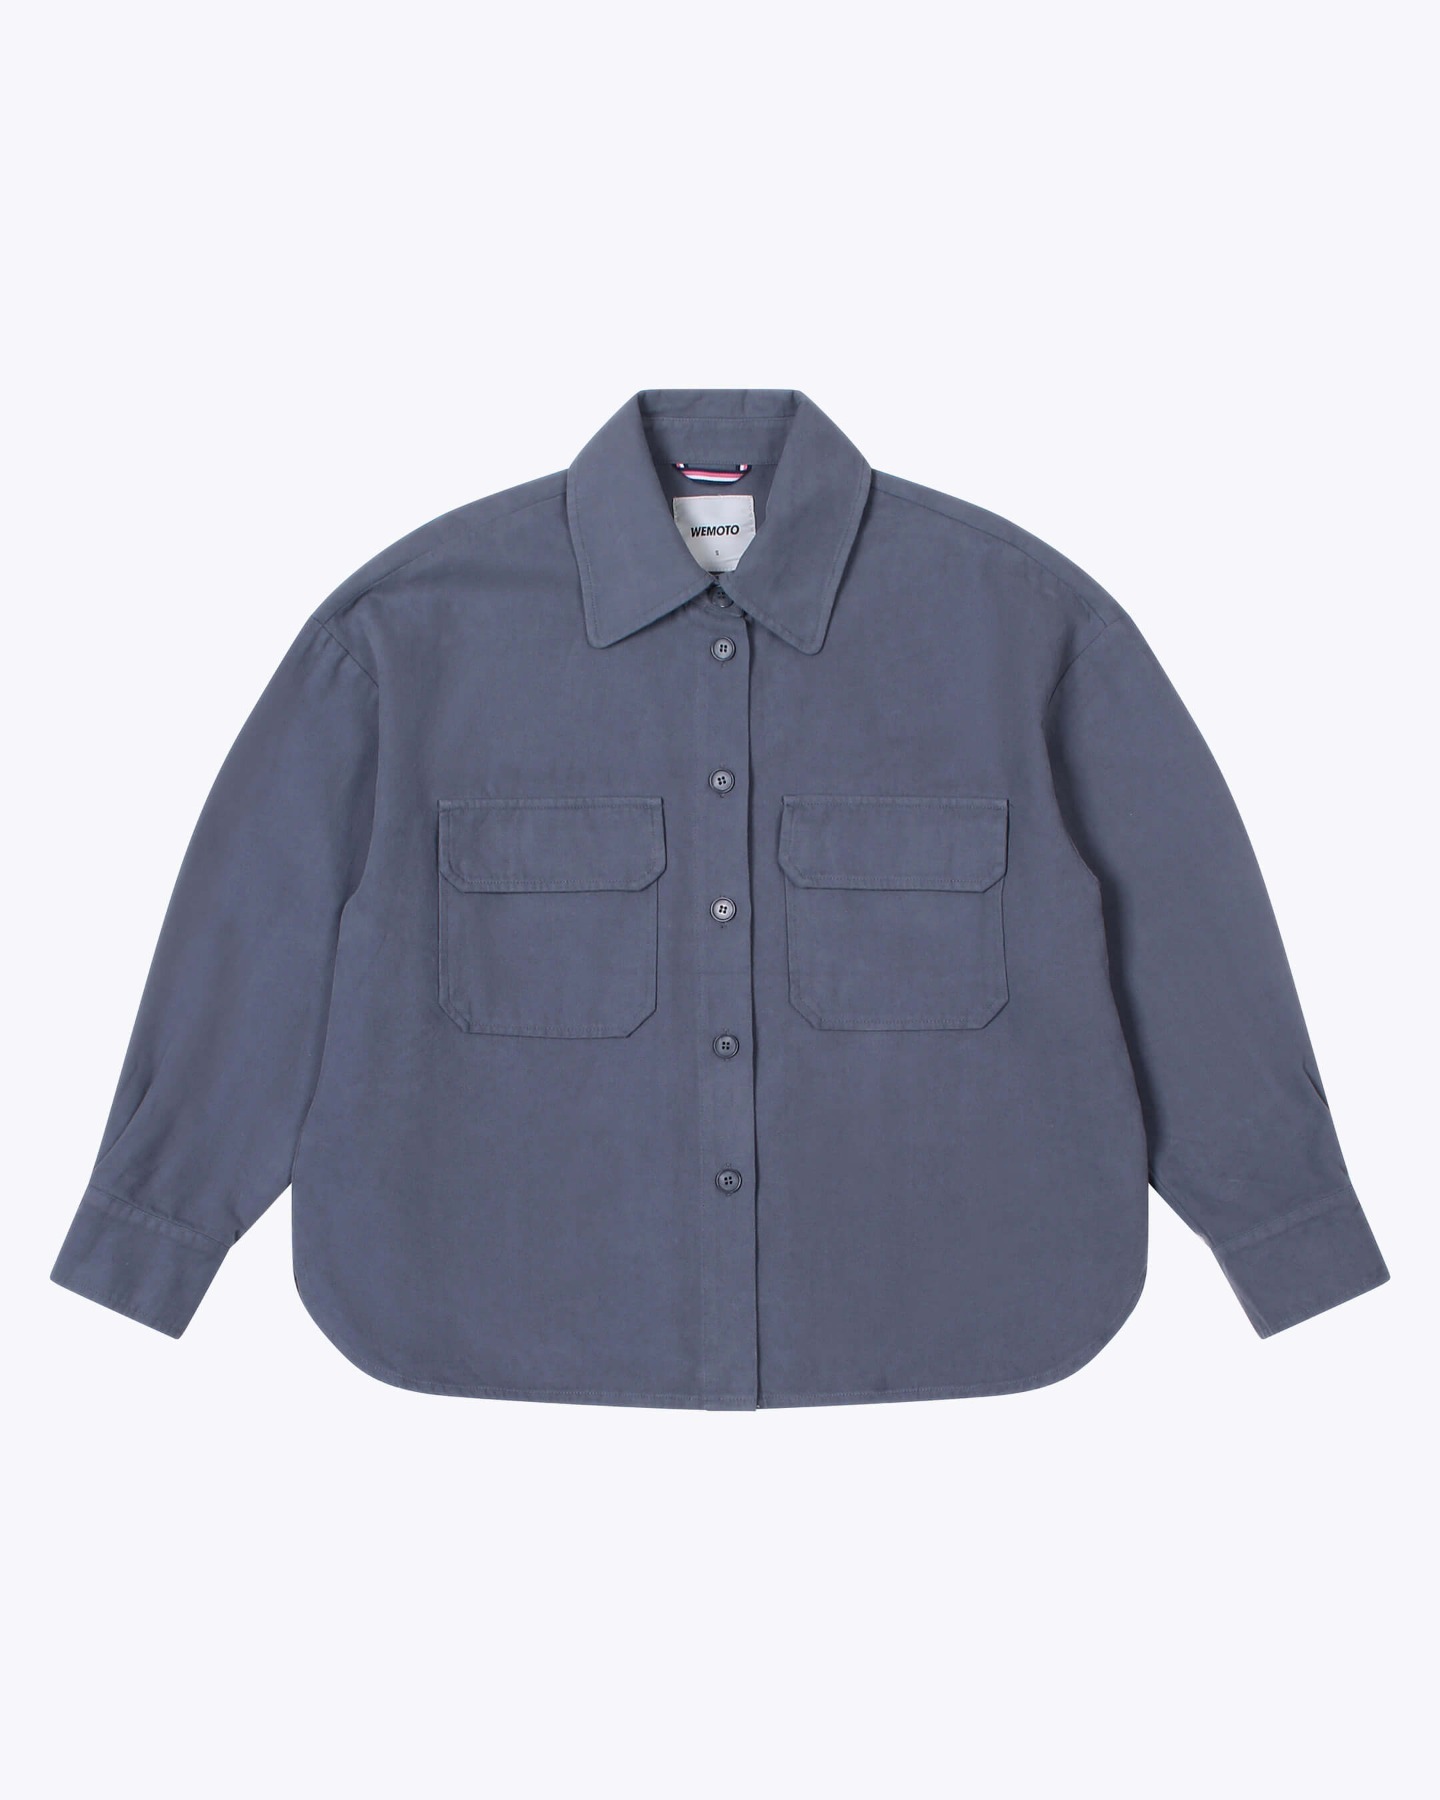 WEMOTO - Stella Flannel - Oversized Worker Shirt - blue stone 6